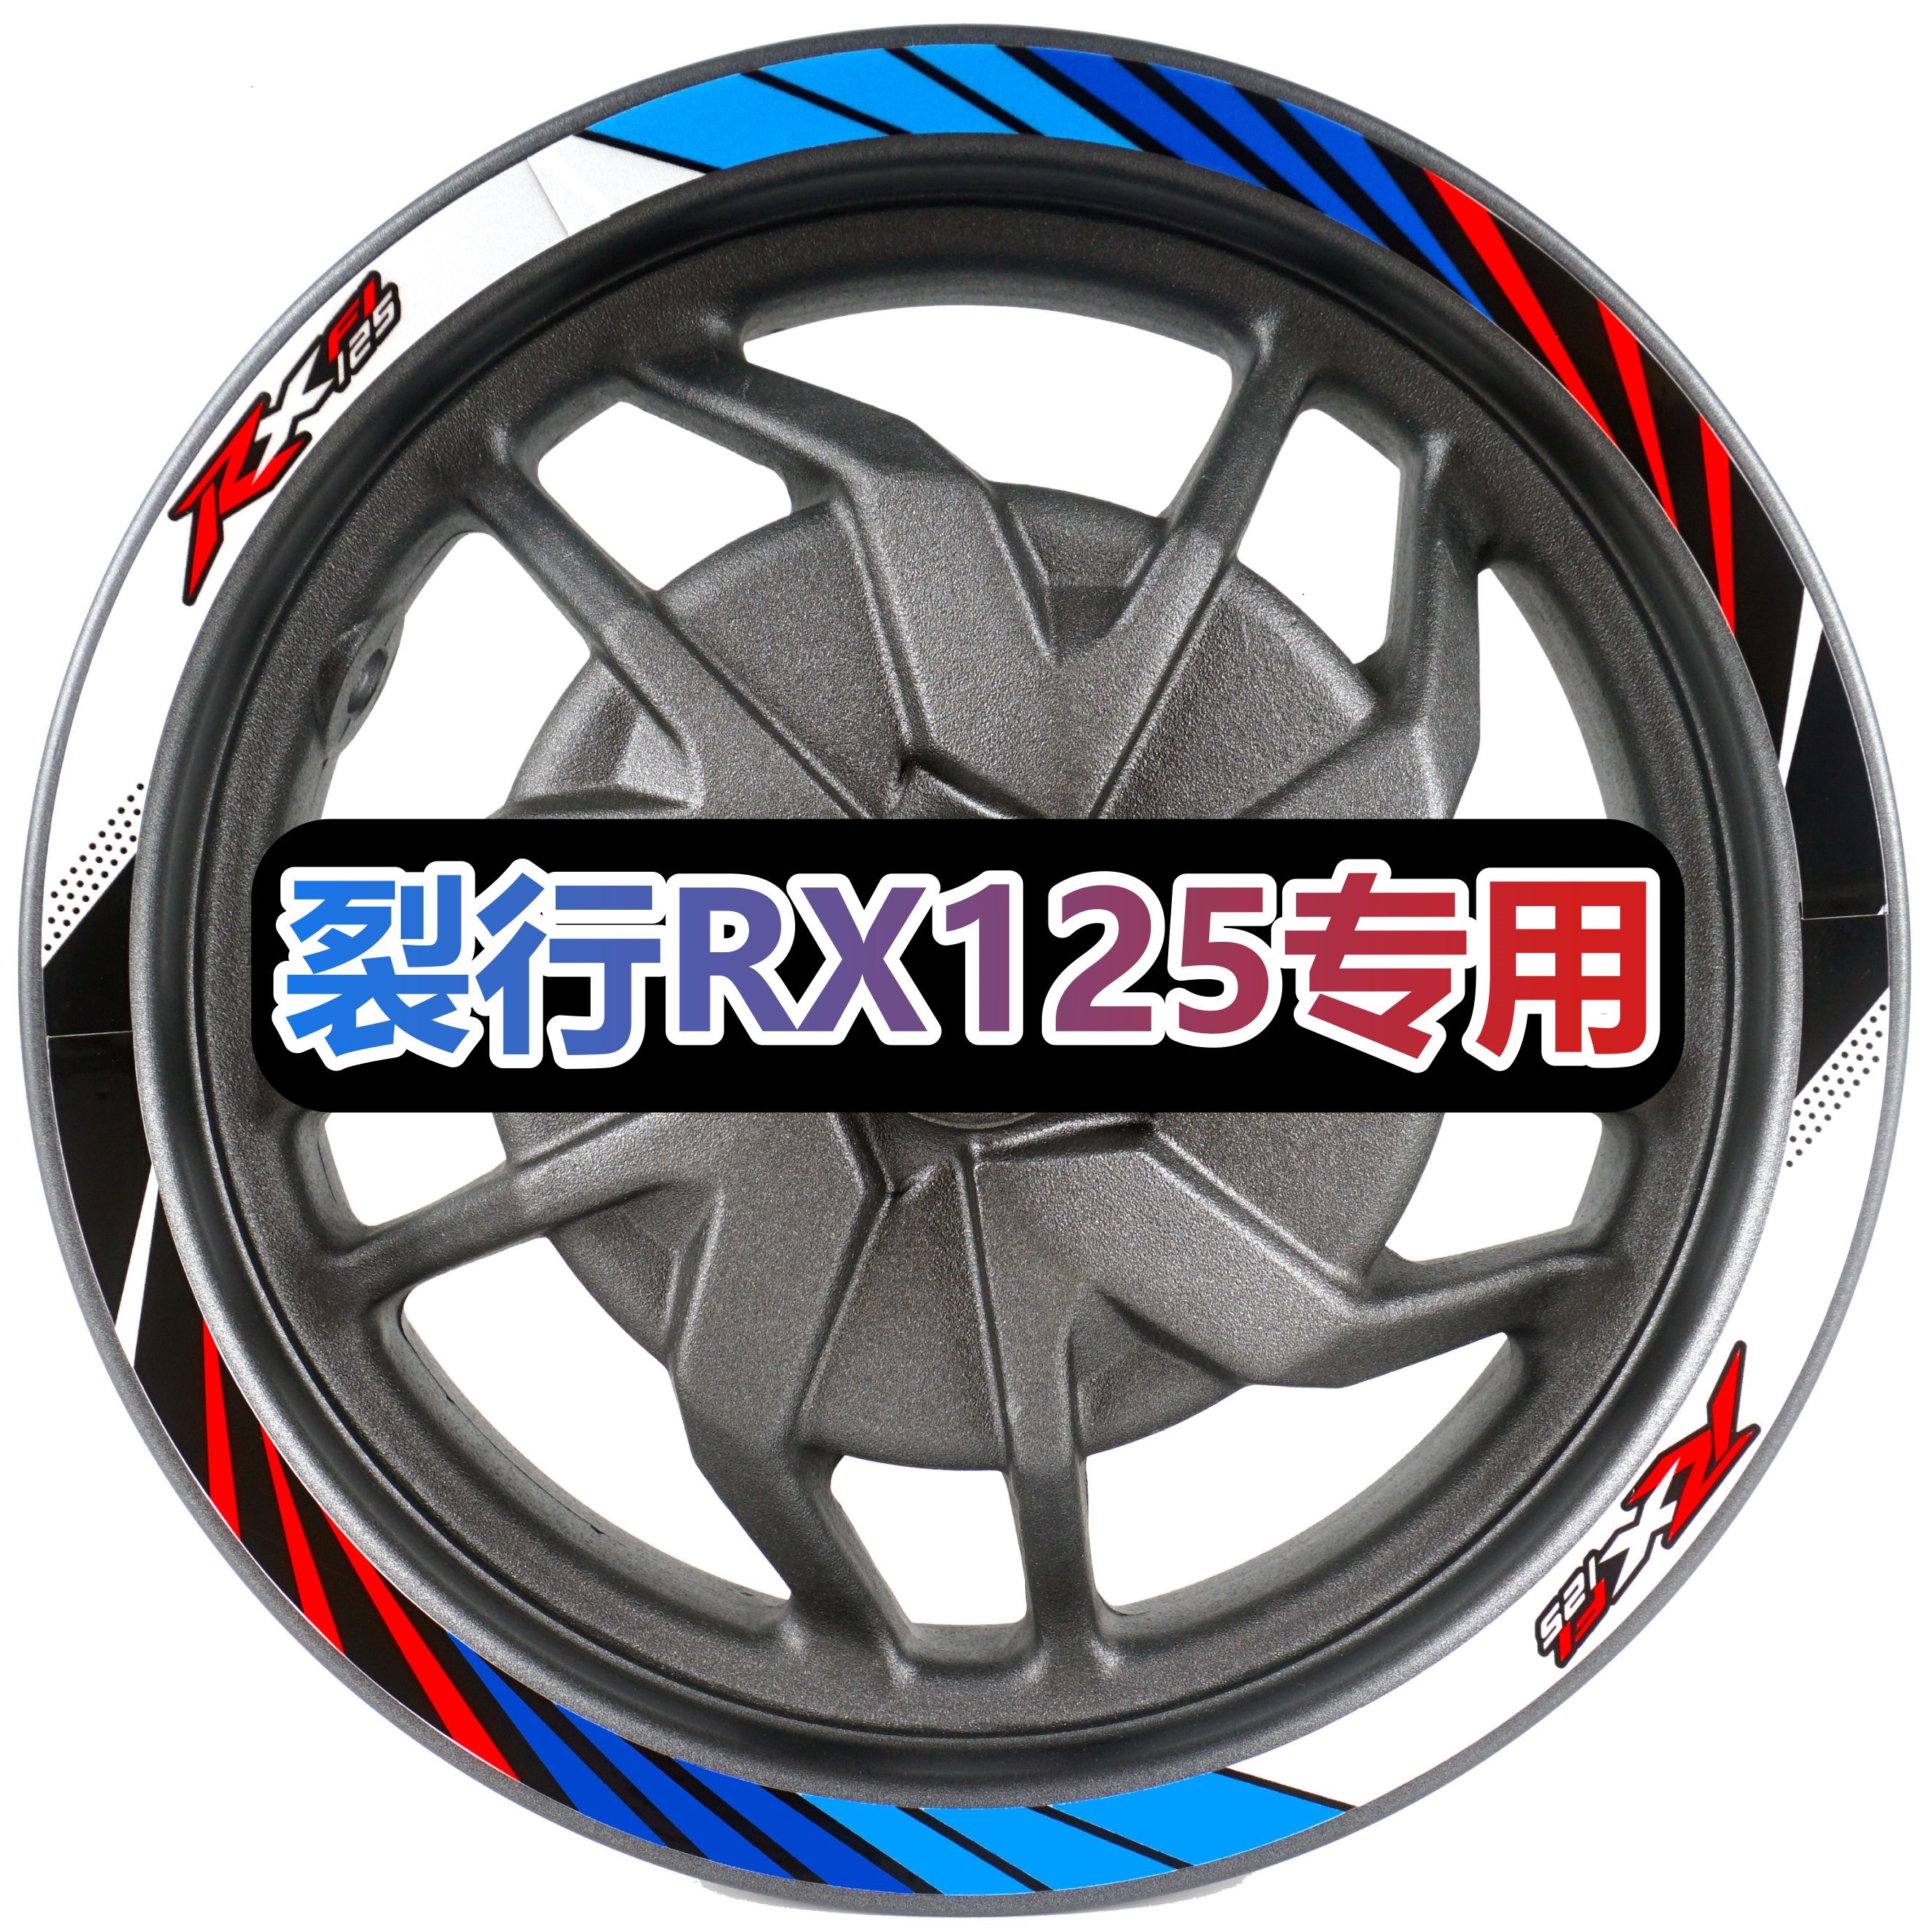 裂行 RX125摩托车踏板改装贴花车贴轮毂贴轮圈反光贴纸